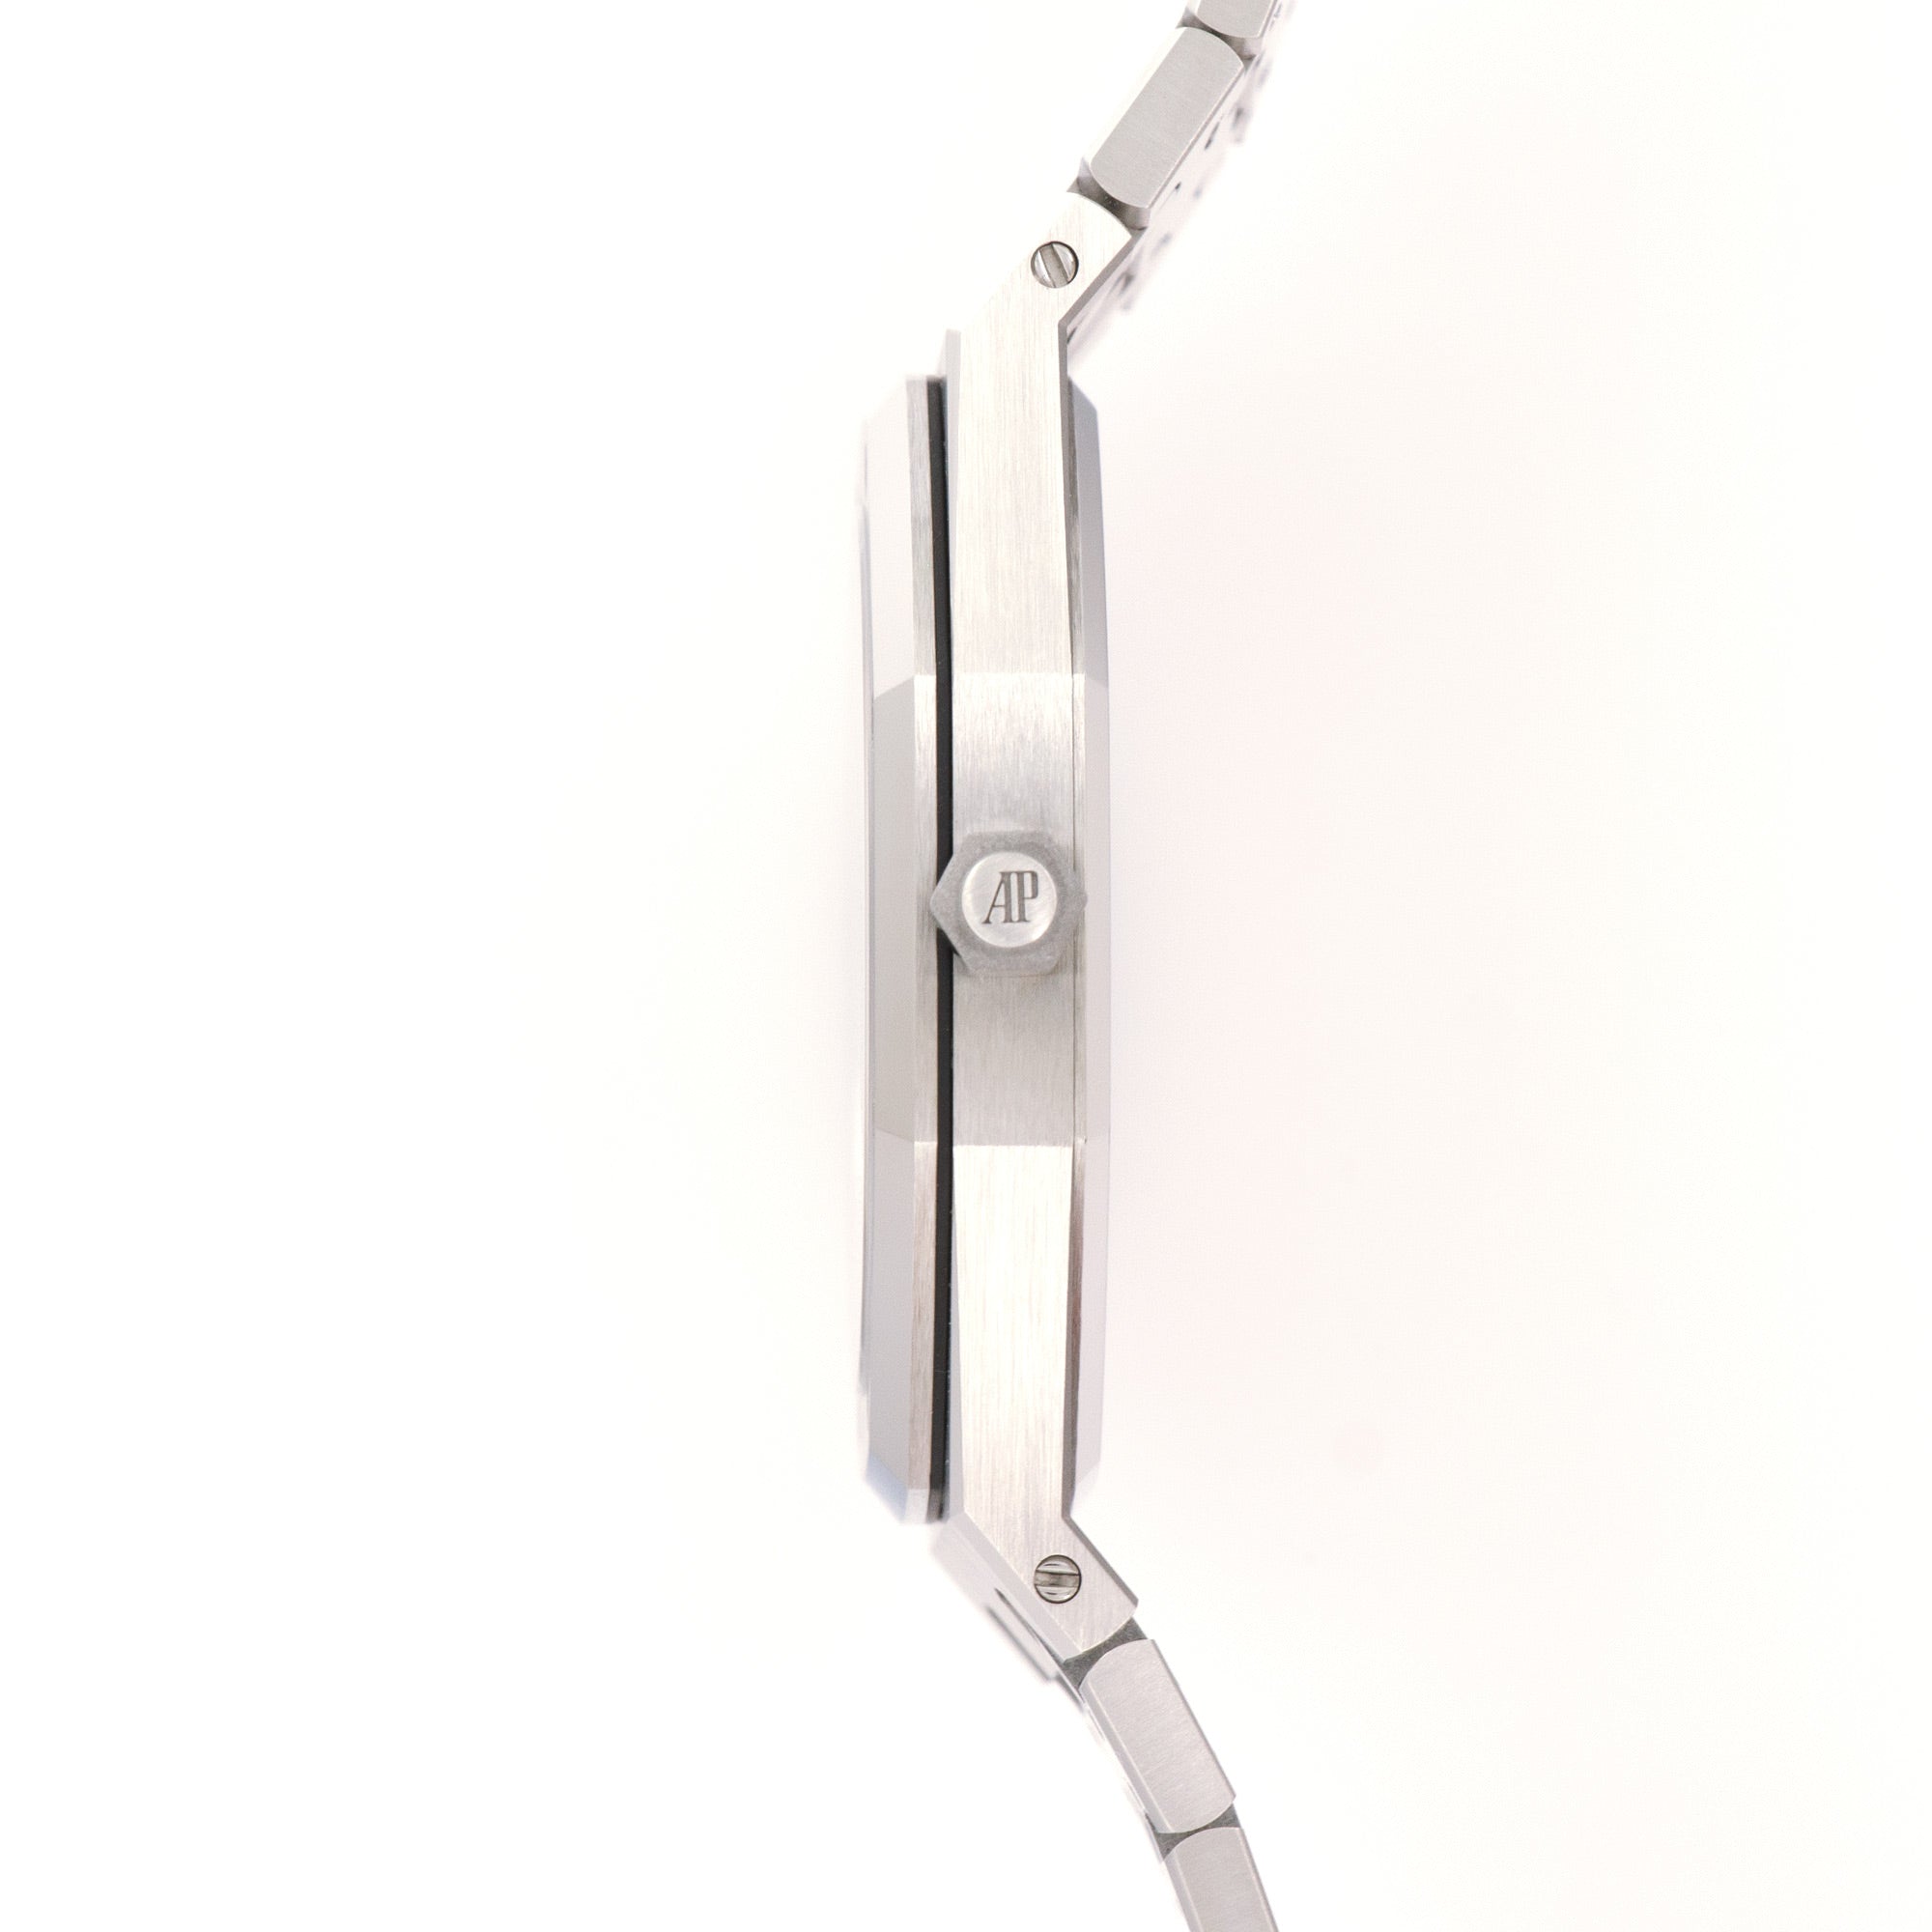 Audemars Piguet - Audemars Piguet Ultra-Thin Royal Oak Jumbo Automatic Watch, Ref. 15202 - The Keystone Watches